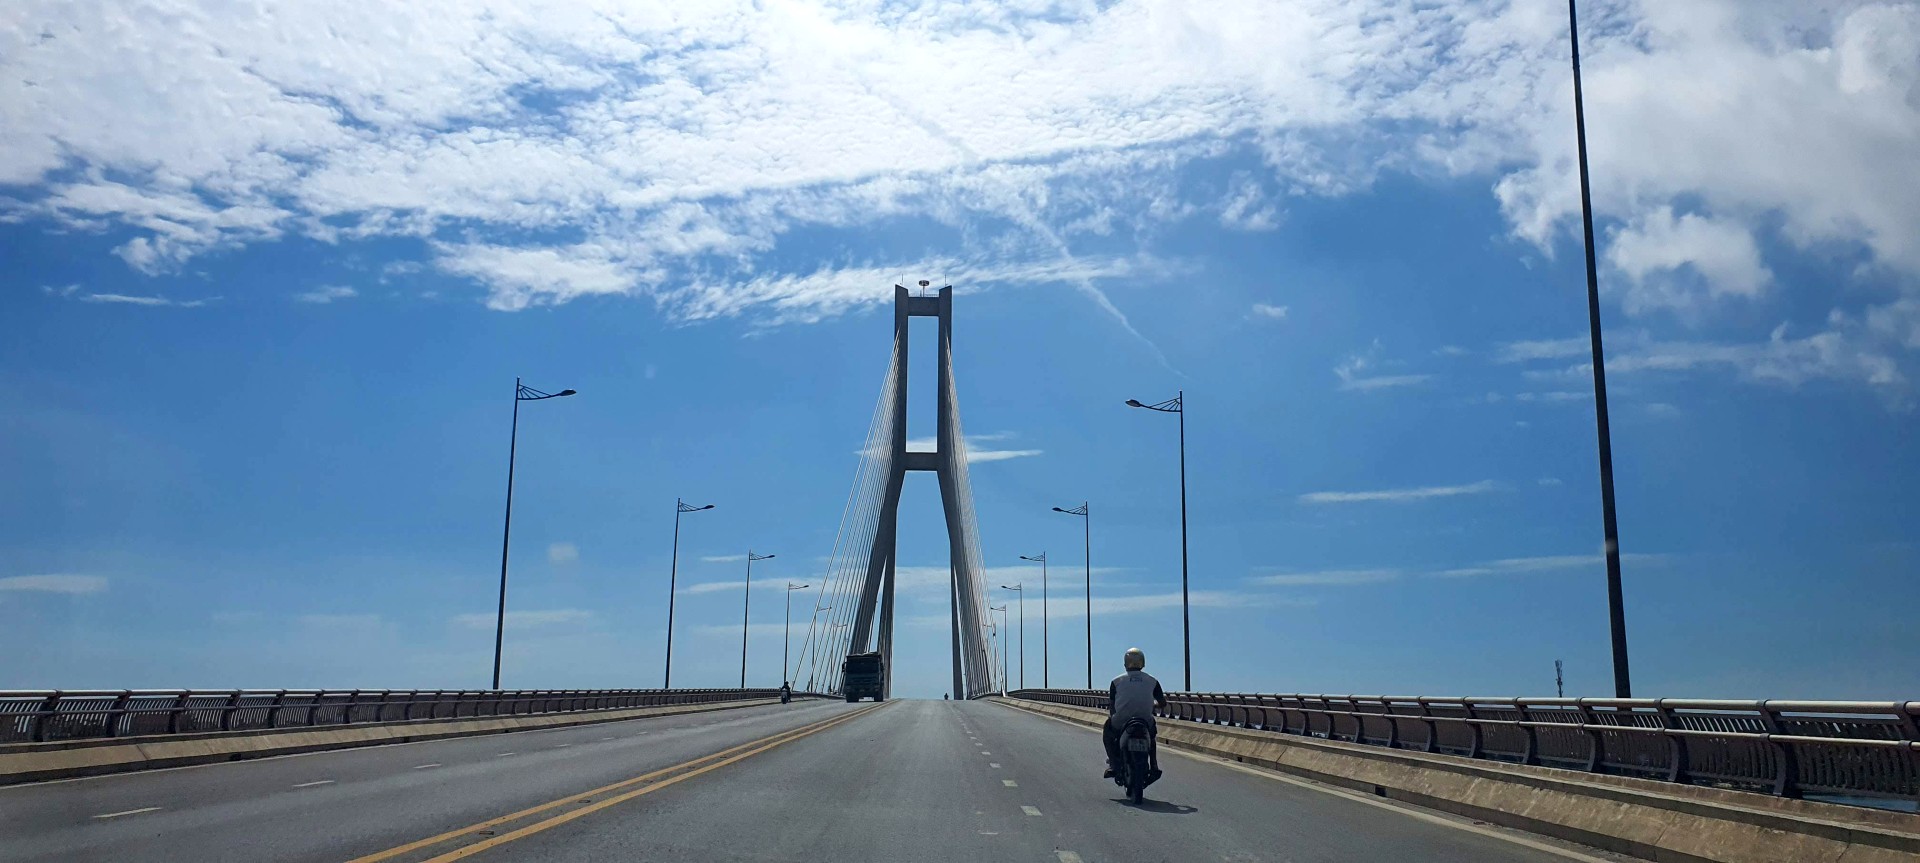 Cầu Nhật Lệ 2 bắc qua sông Nhật Lệ tại TP Đồng Hới, Quảng Bình.